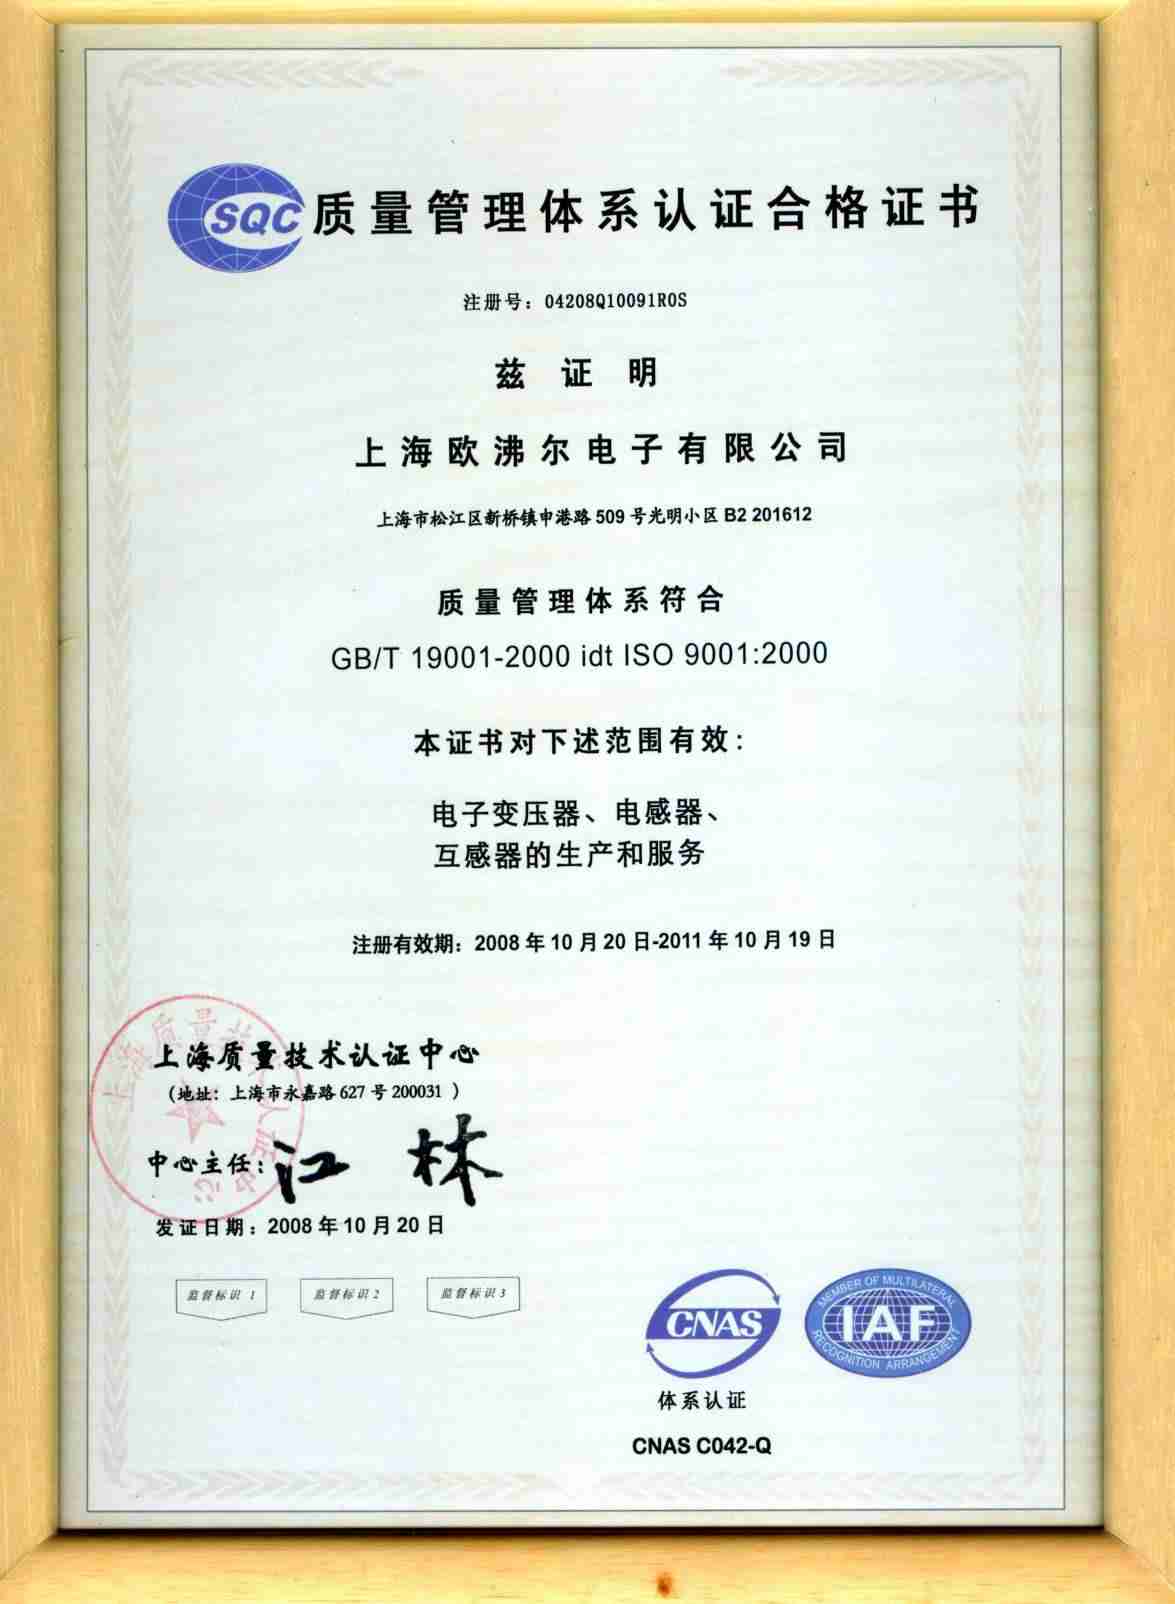 iso9001:2000证书(中文)